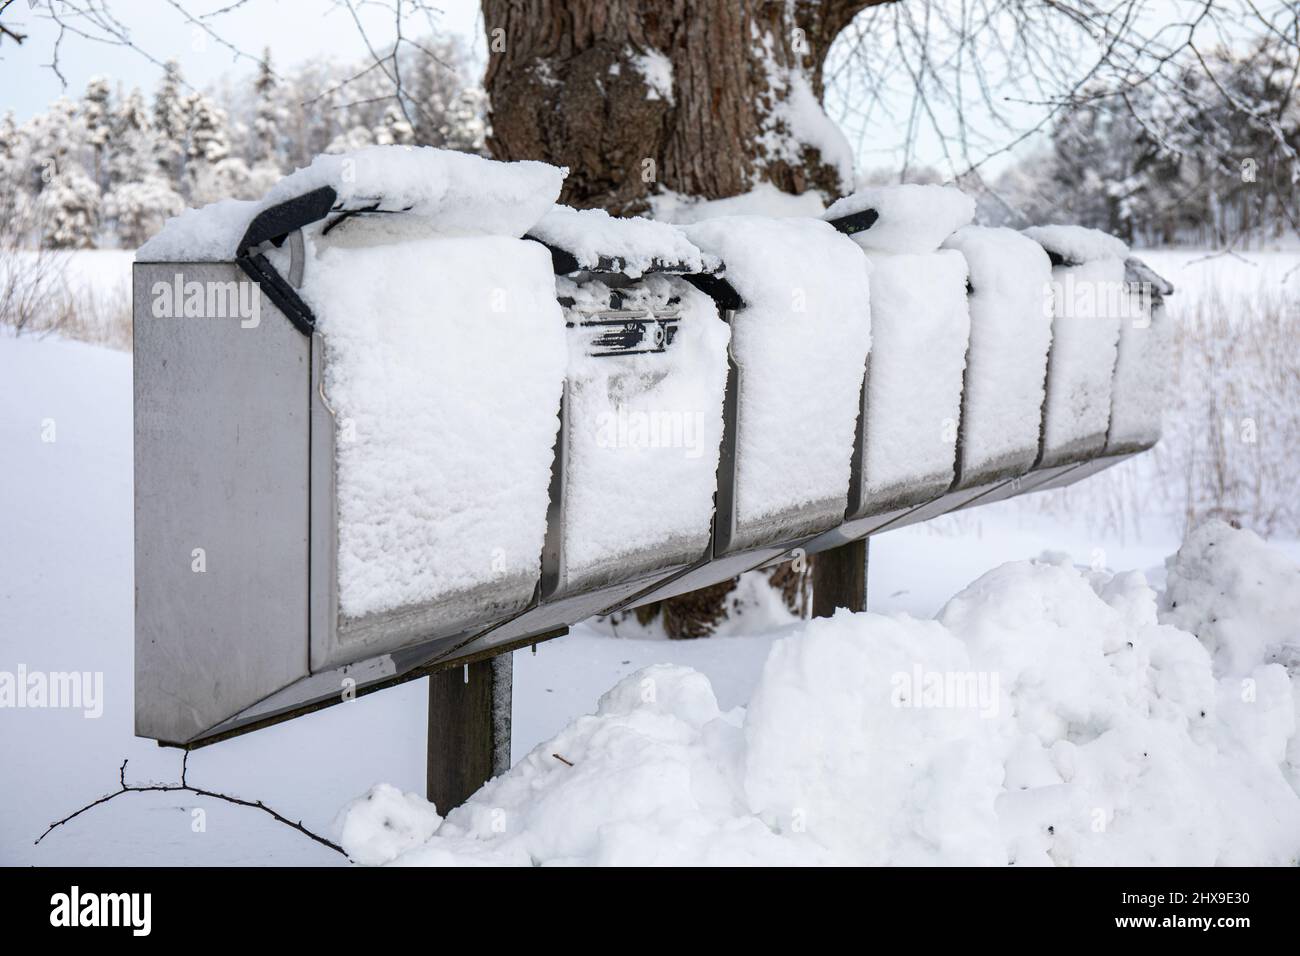 Des boîtes aux lettres recouvertes de neige après de fortes chutes de neige à Helsinki, en Finlande Banque D'Images